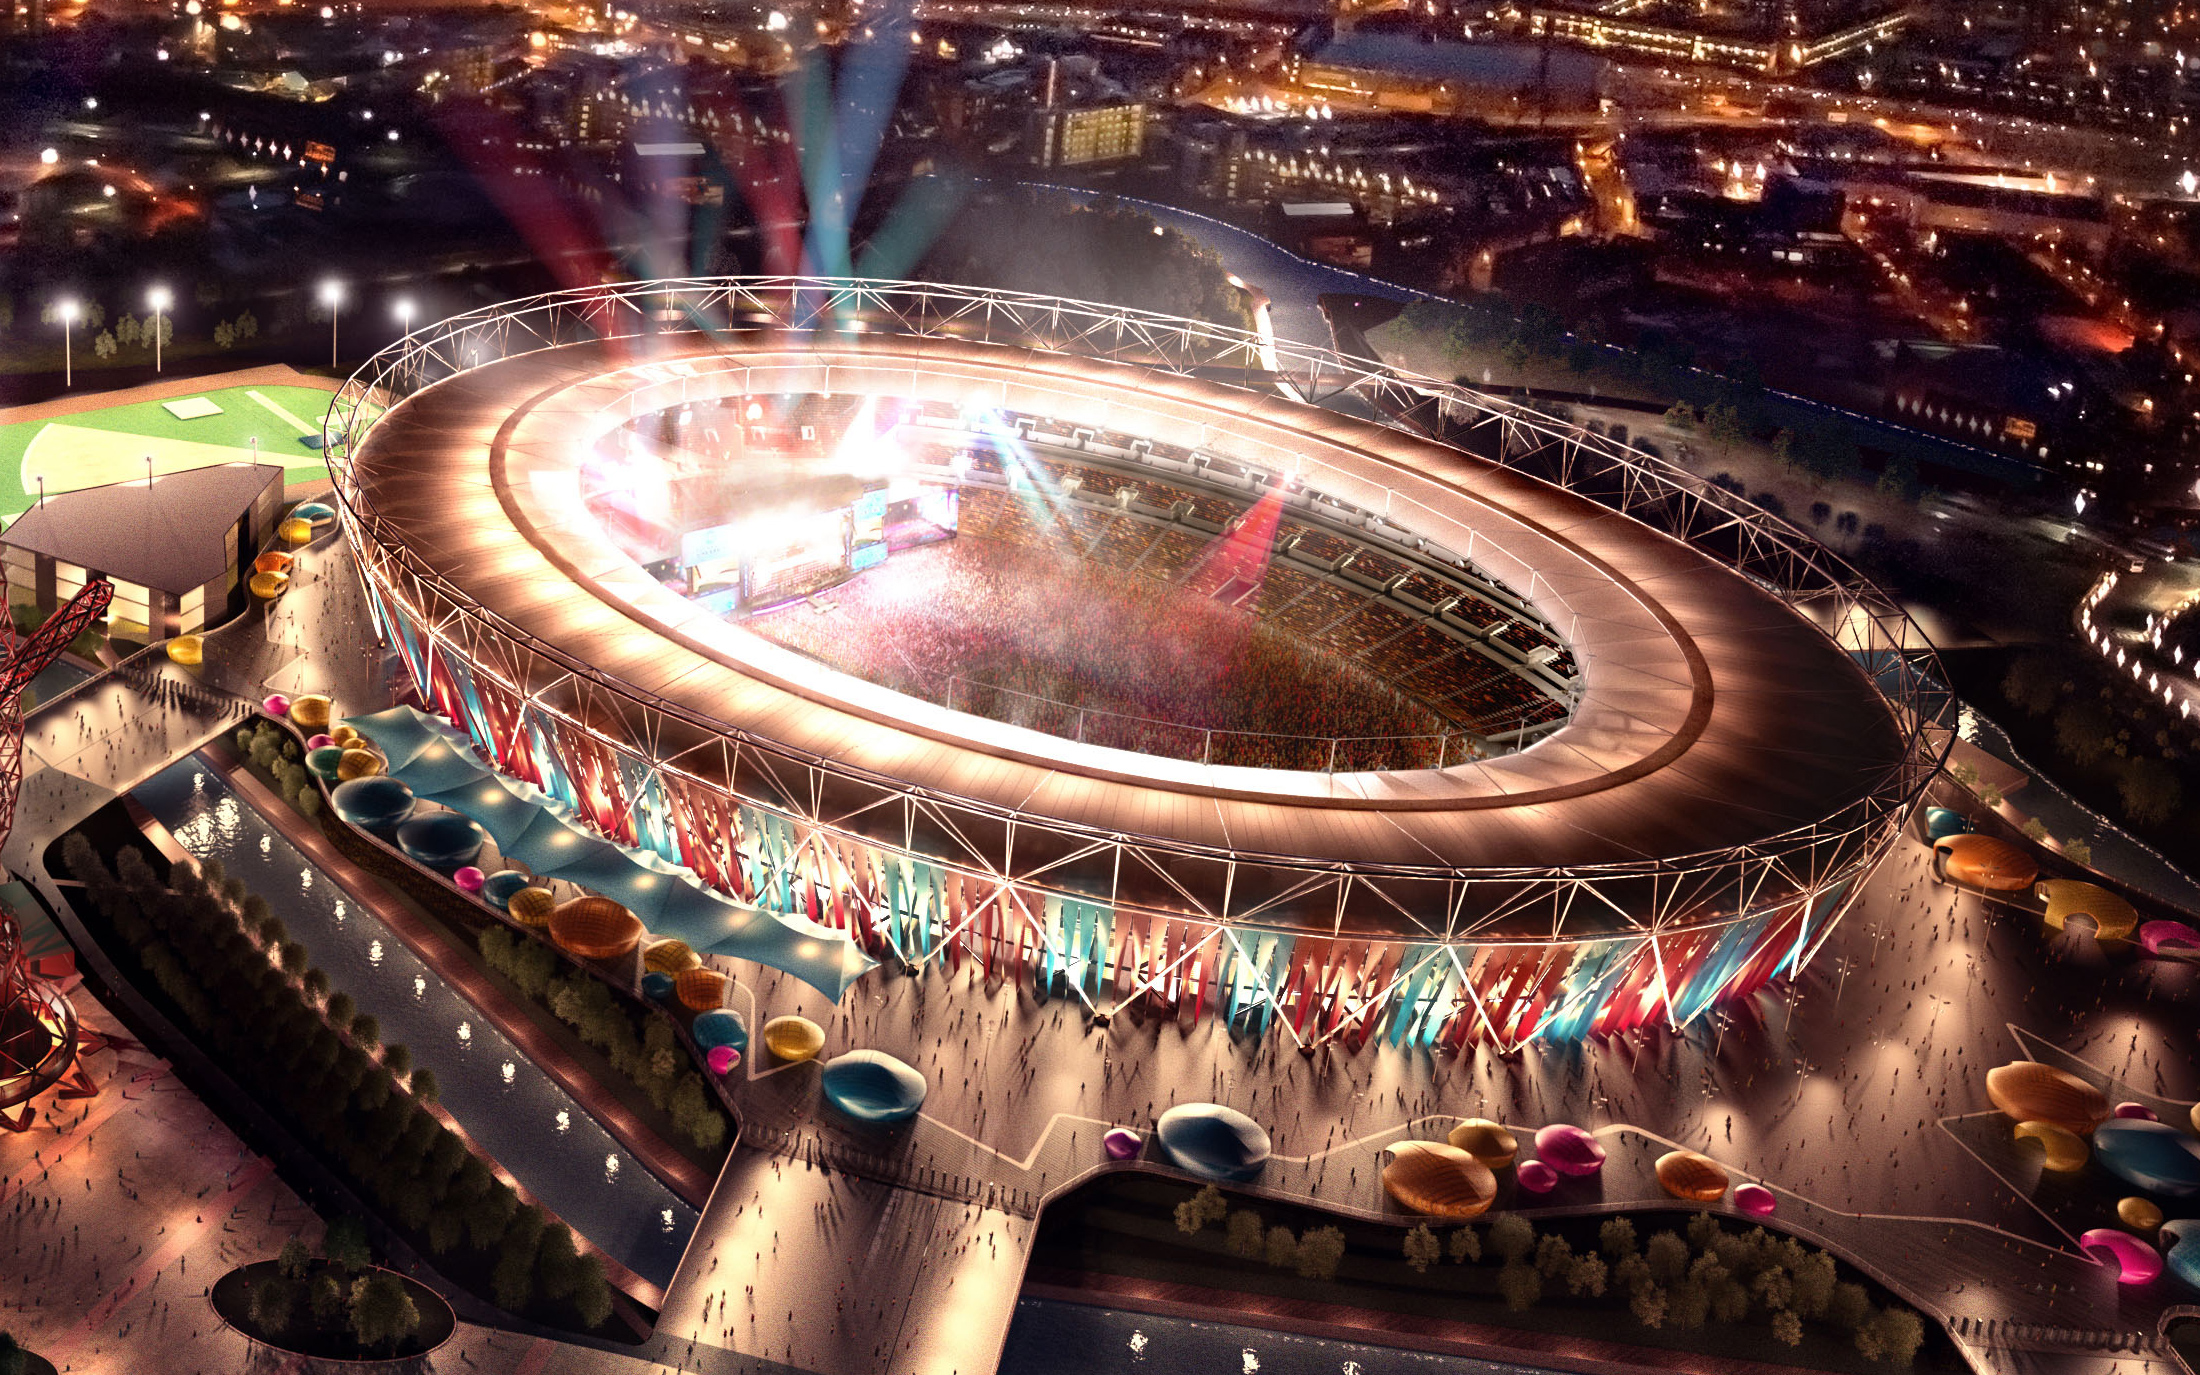 Sân vận động Olympic London 2012 với kiến trúc độc đáo và hiện đại chắc chắn sẽ khiến bạn say đắm trước cảnh quan tuyệt đẹp của nơi này. Bạn sẽ có cơ hội ngắm nhìn sân vận động lừng danh này cùng với những người đam mê thể thao như bạn.